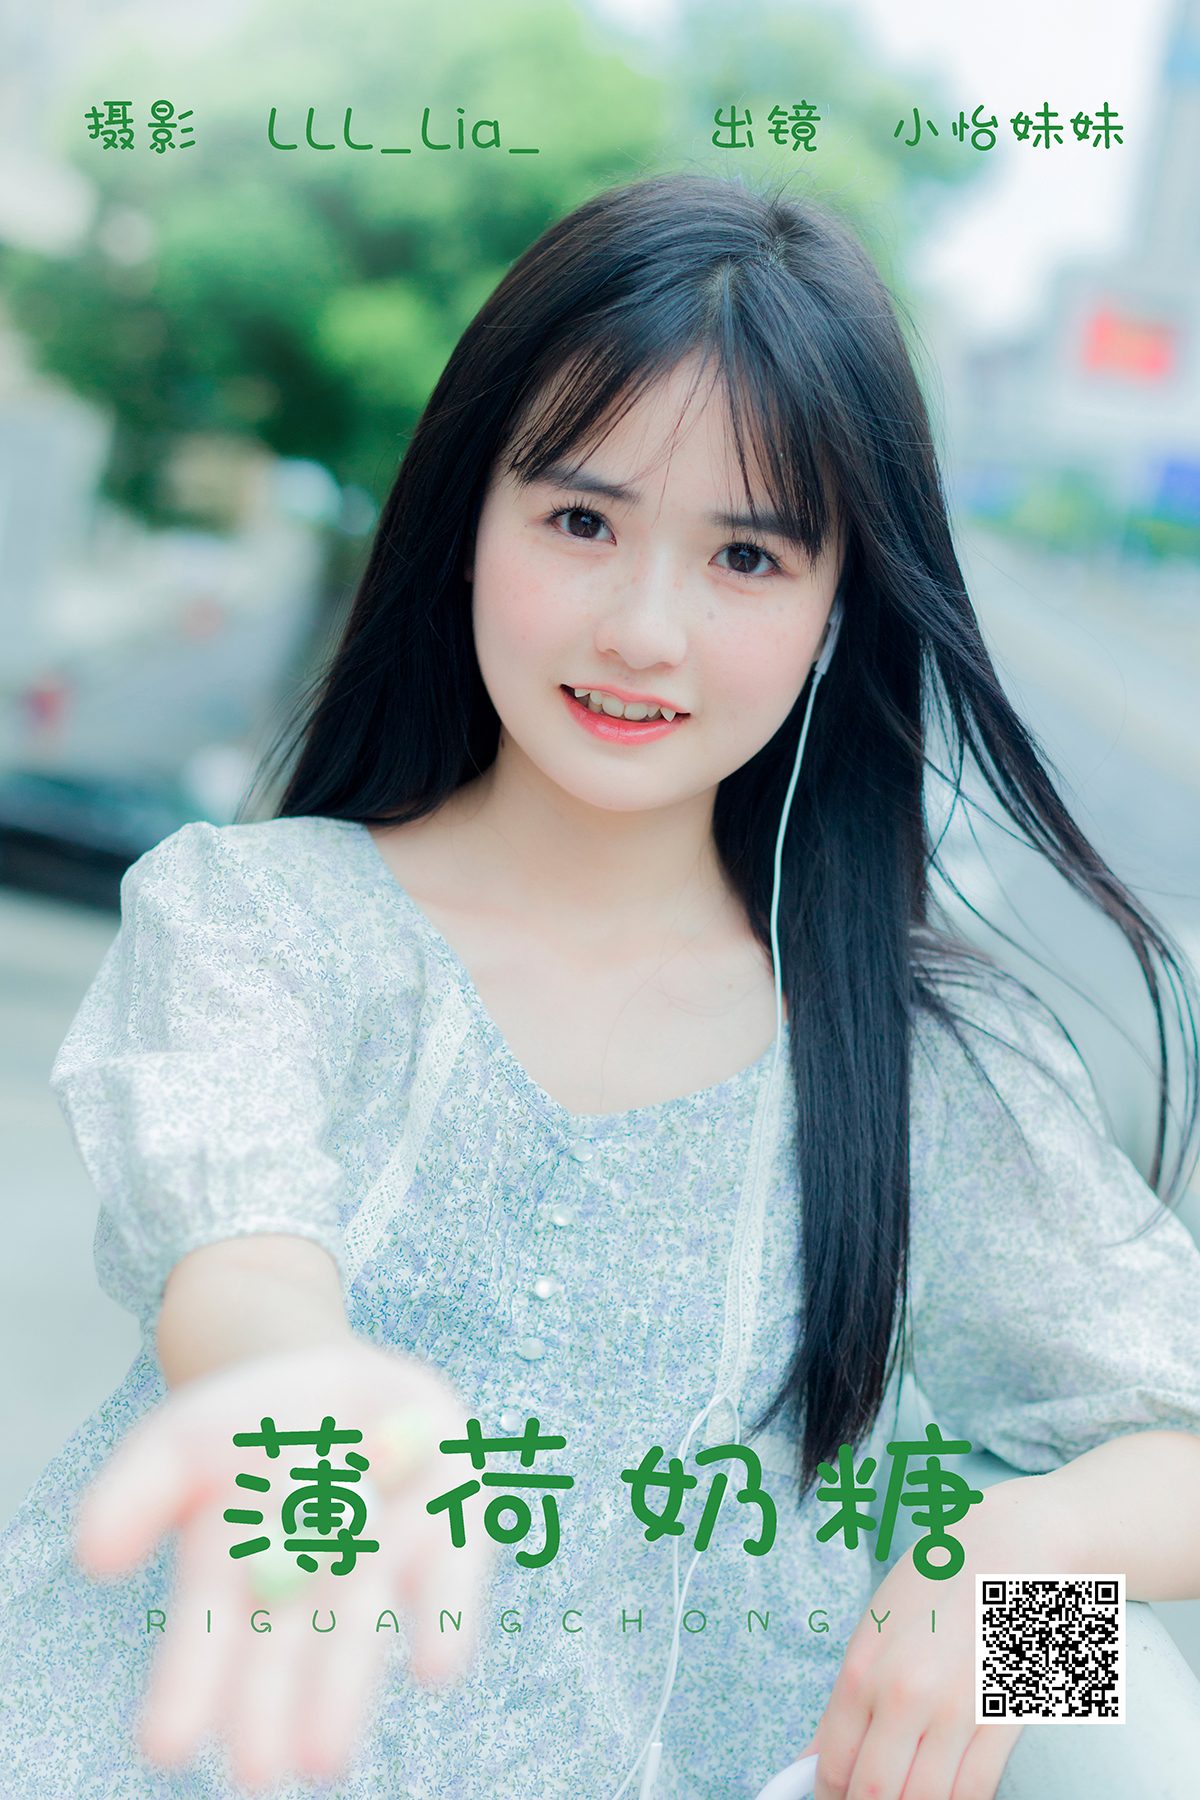 YiTuYu艺图语 Vol 5126 Xiao Yi Mei Mei Cute 0015 3230266089.jpg